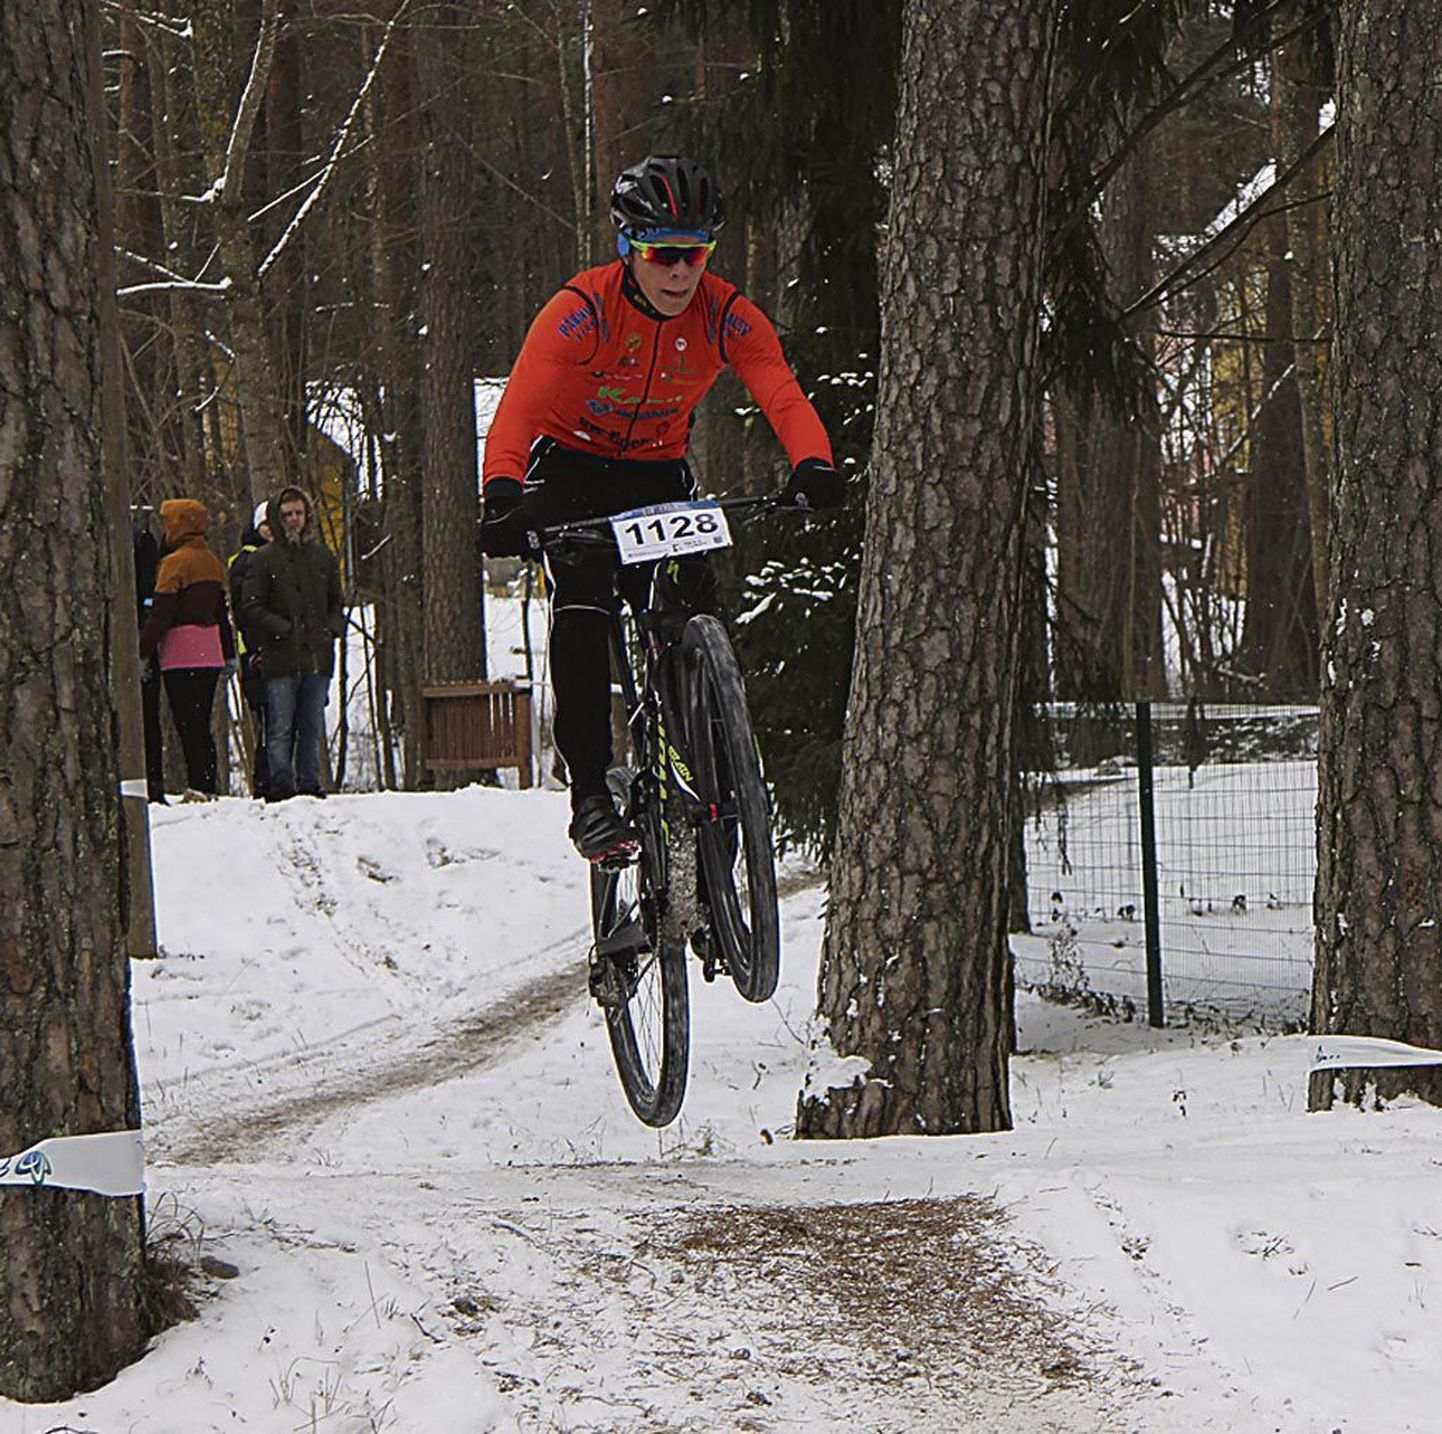 Nädalavahetusel Eestis talvistes oludes võistelnud ratturid pääsevad Hispaania päikese alla. Pildil Karl Brent Premet.